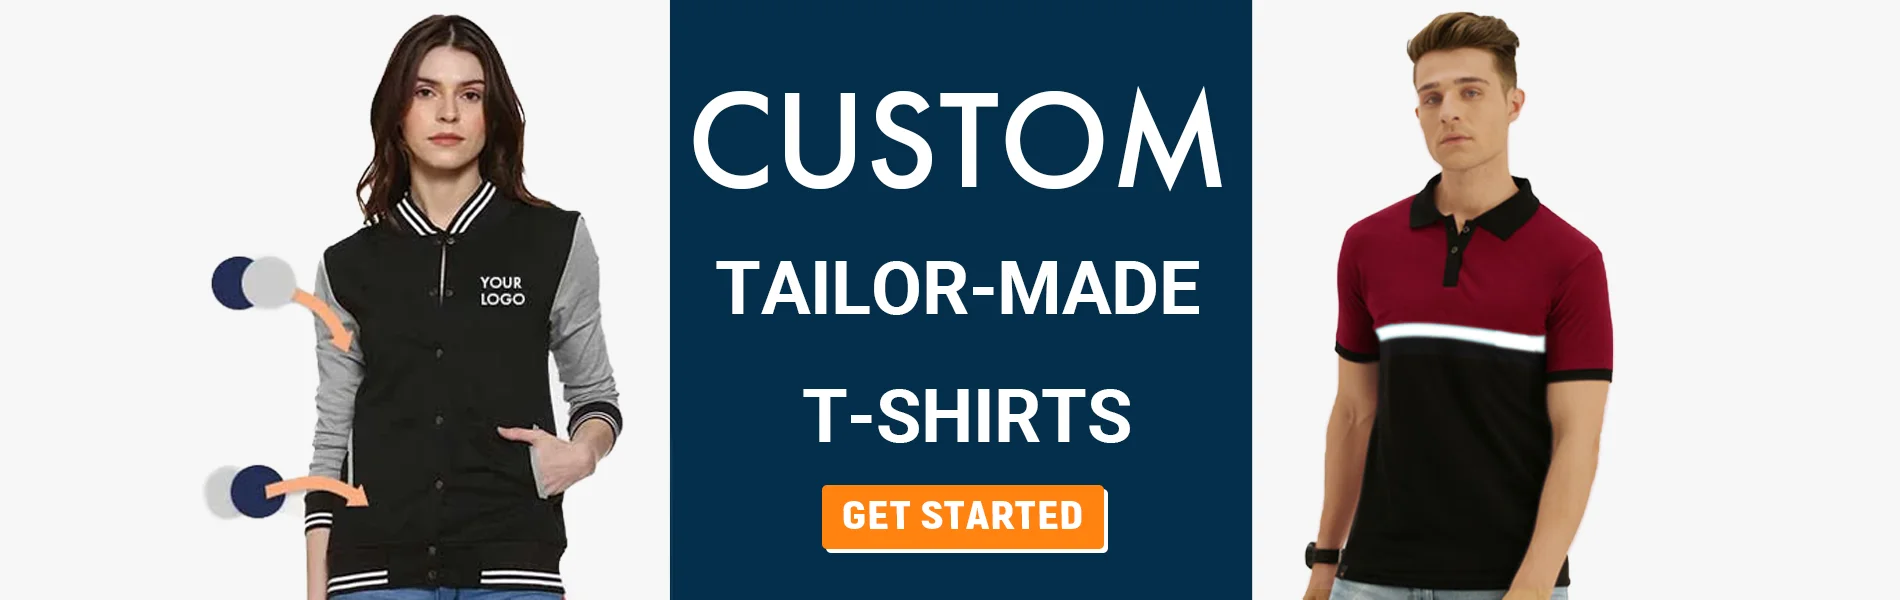 custom tailormade t-shirts dispur